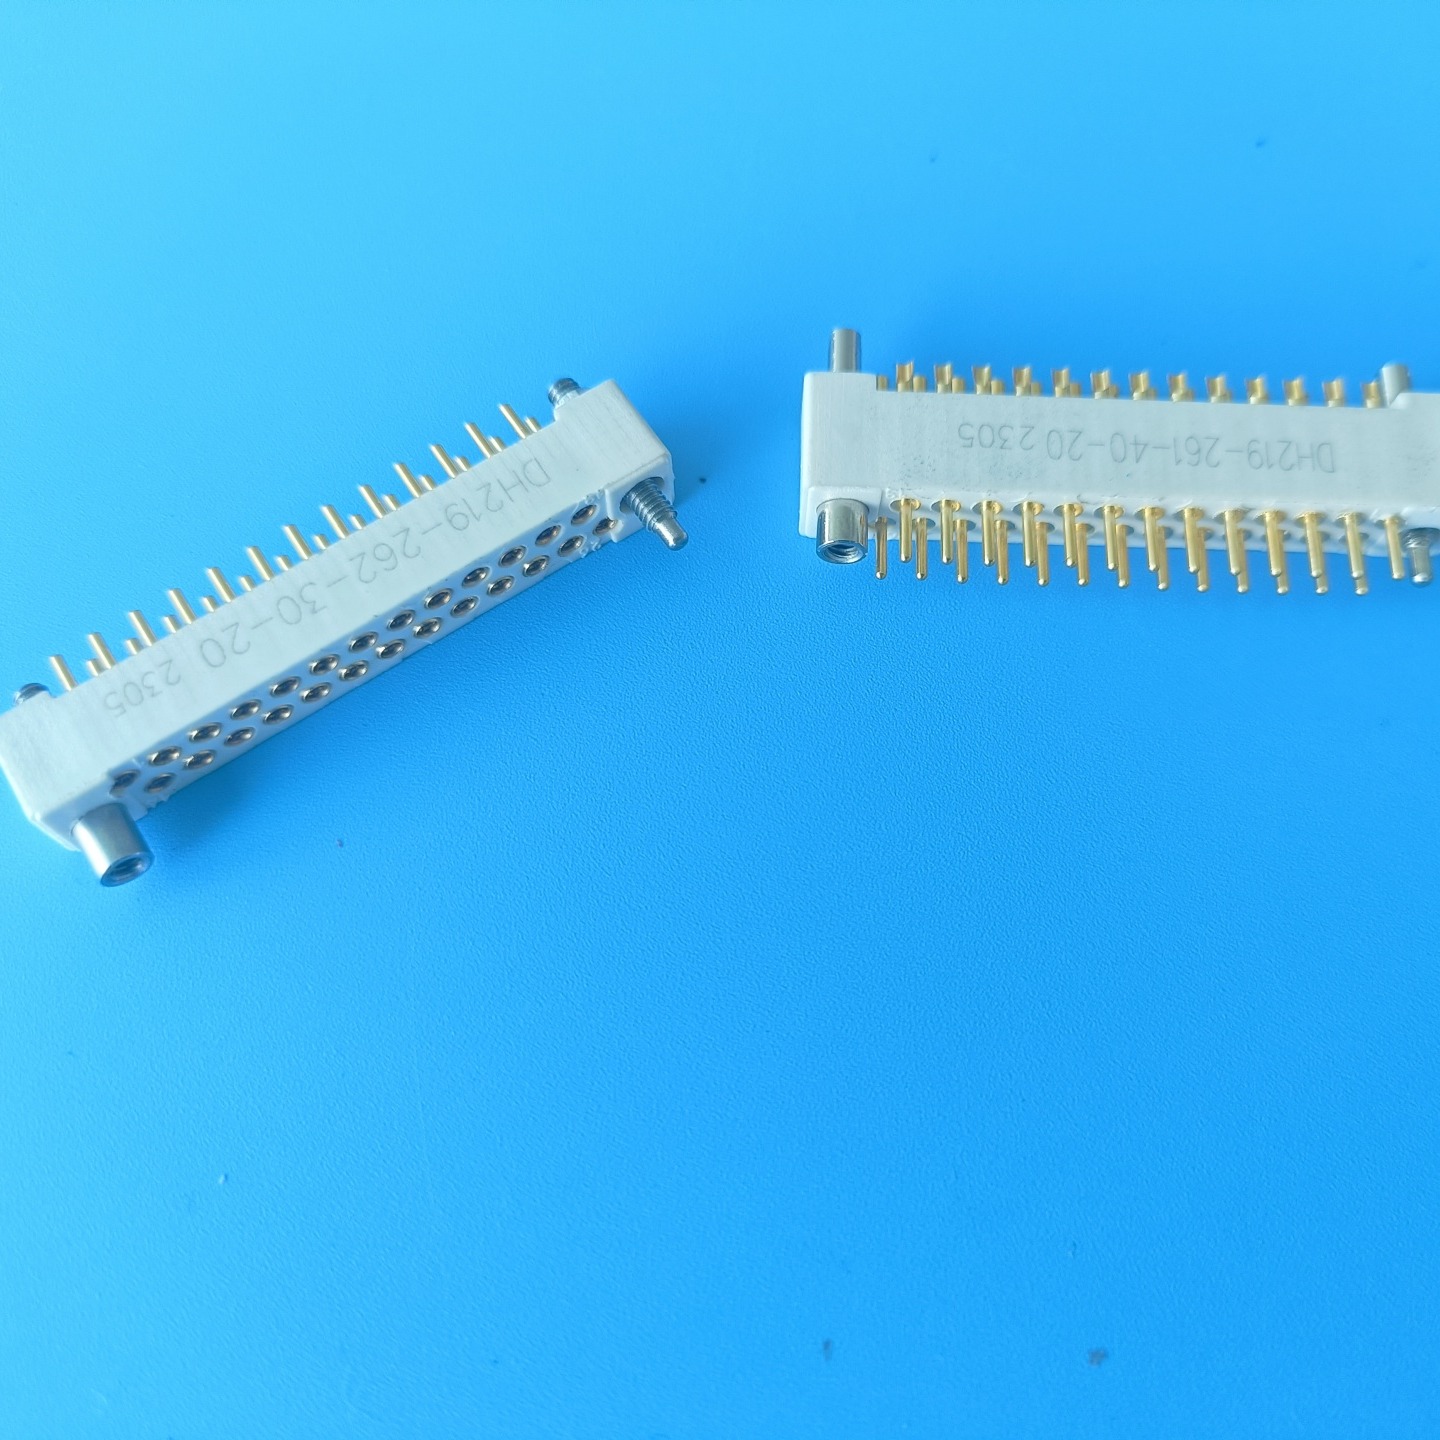 26芯线簧印制板连接器 东普电子制造 抗振动  插拔次数10000次以上  插拔柔和   插拔力小  接触可靠图片